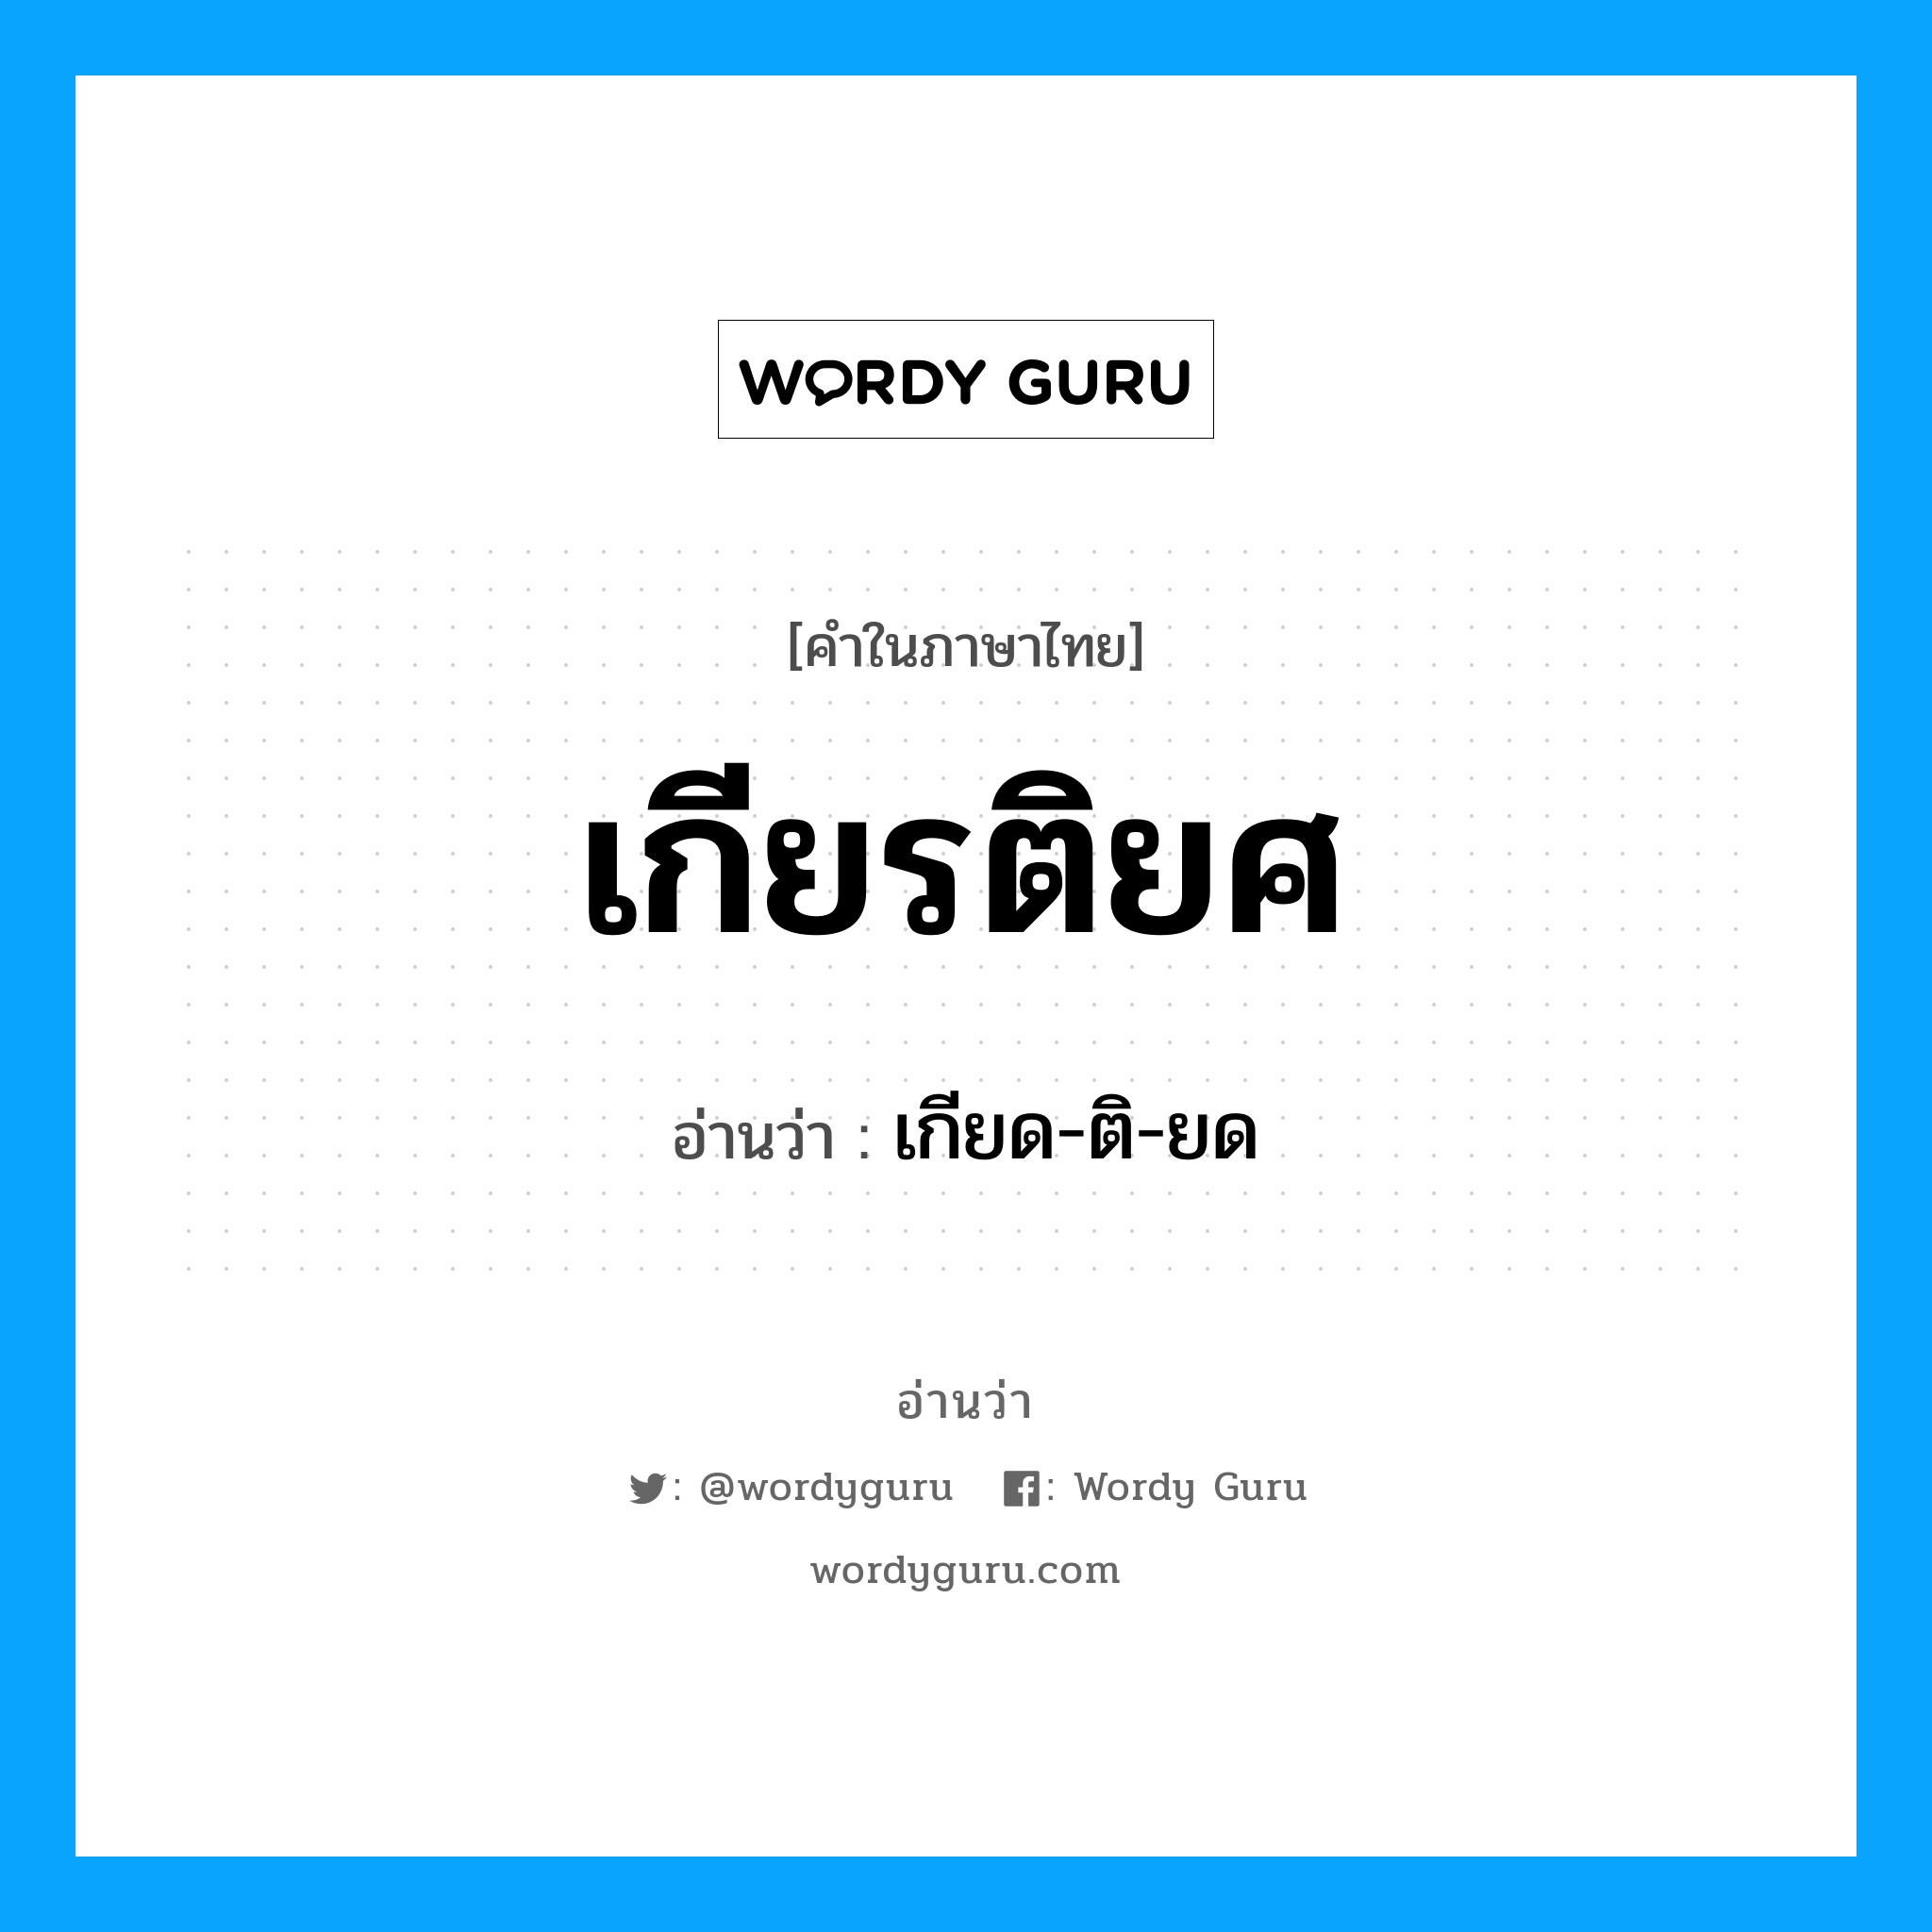 เกียด-ติ-ยด เป็นคำอ่านของคำไหน?, คำในภาษาไทย เกียด-ติ-ยด อ่านว่า เกียรติยศ